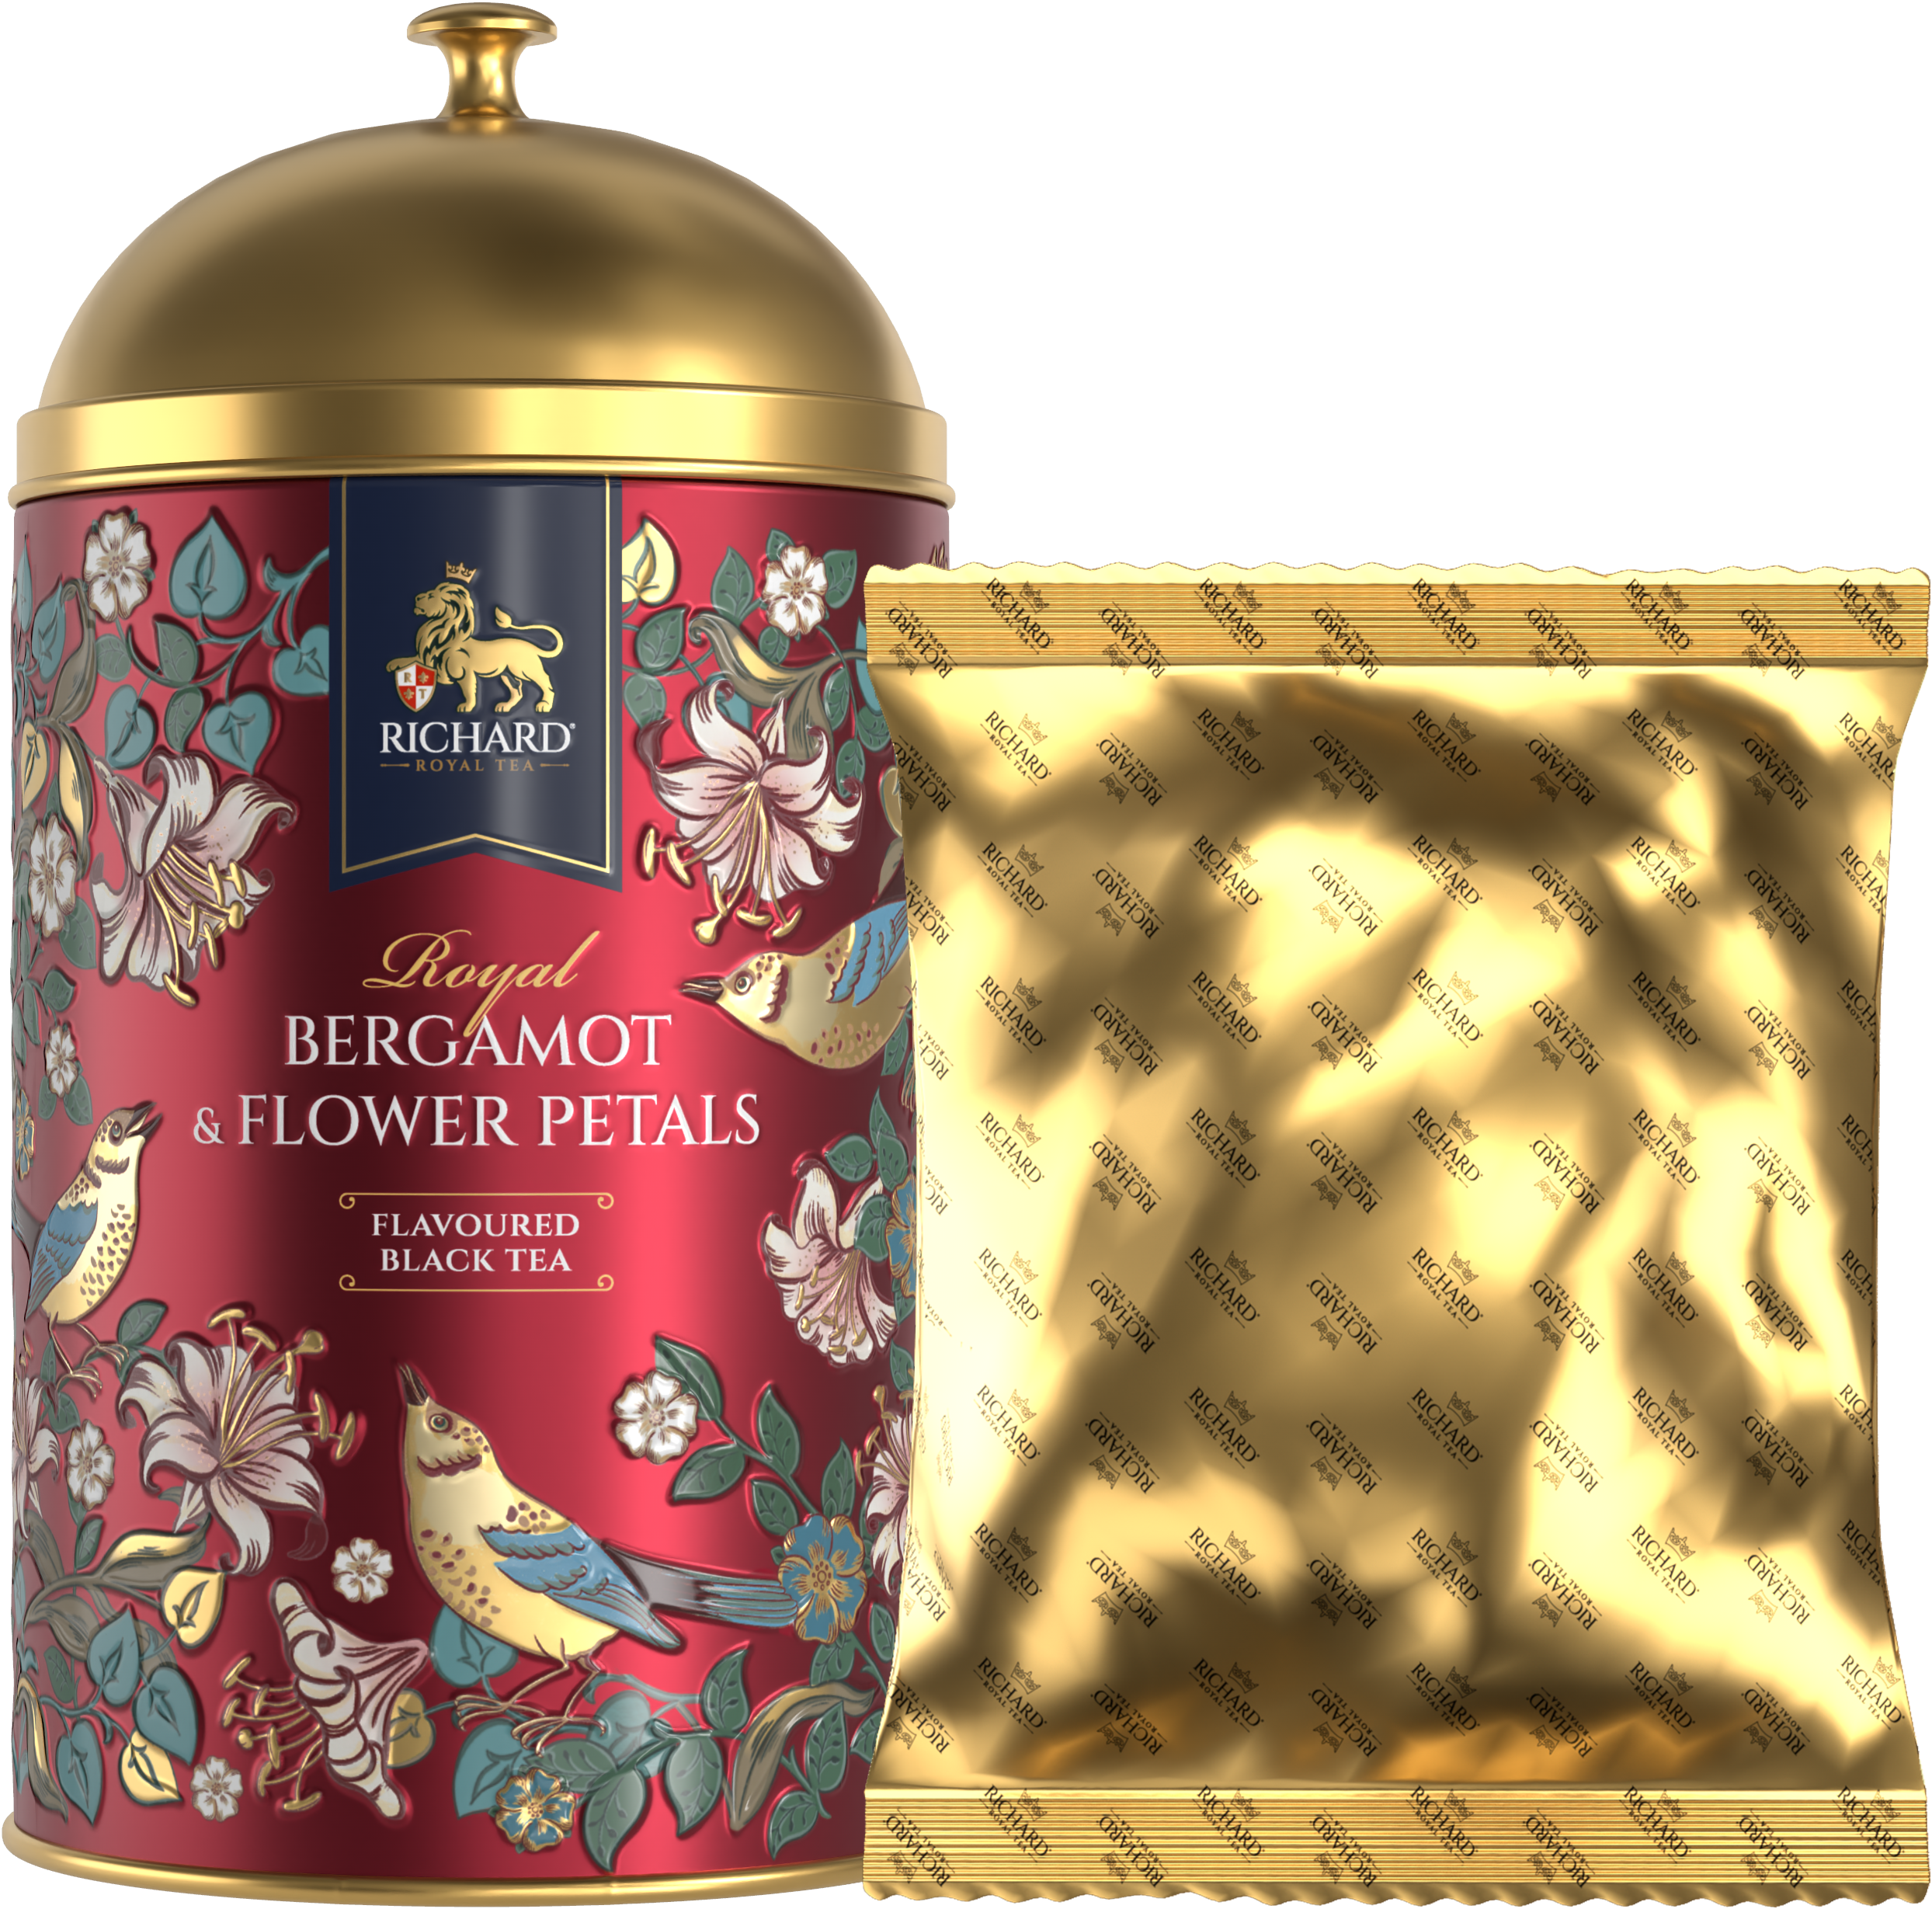 Richard "Királyi Bergamott & Virágszirmok", fémdobozos ízesített fekete szálas tea 60g, PIROS Richard Royal Tea